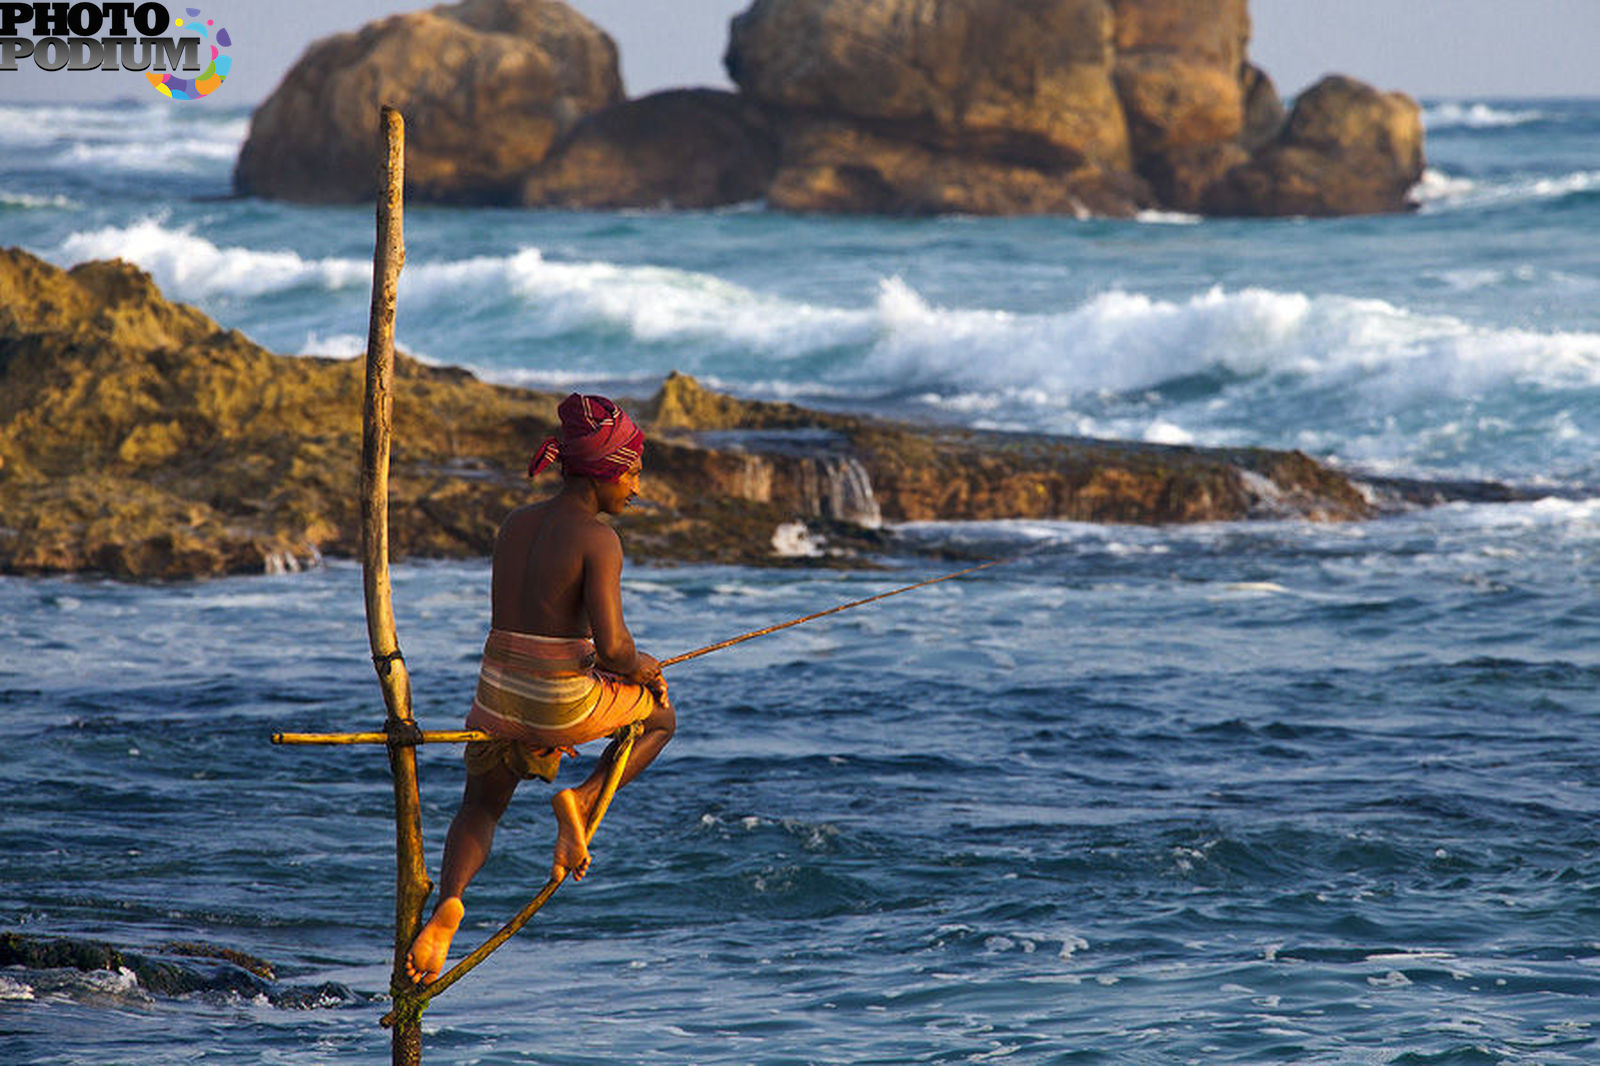 Шри ланка рф. Велигама Шри Ланка рыбаки. Рыболовство Шри Ланка. Шри Ланка туризм. Рыбаки на Шри Ланке на шестах.